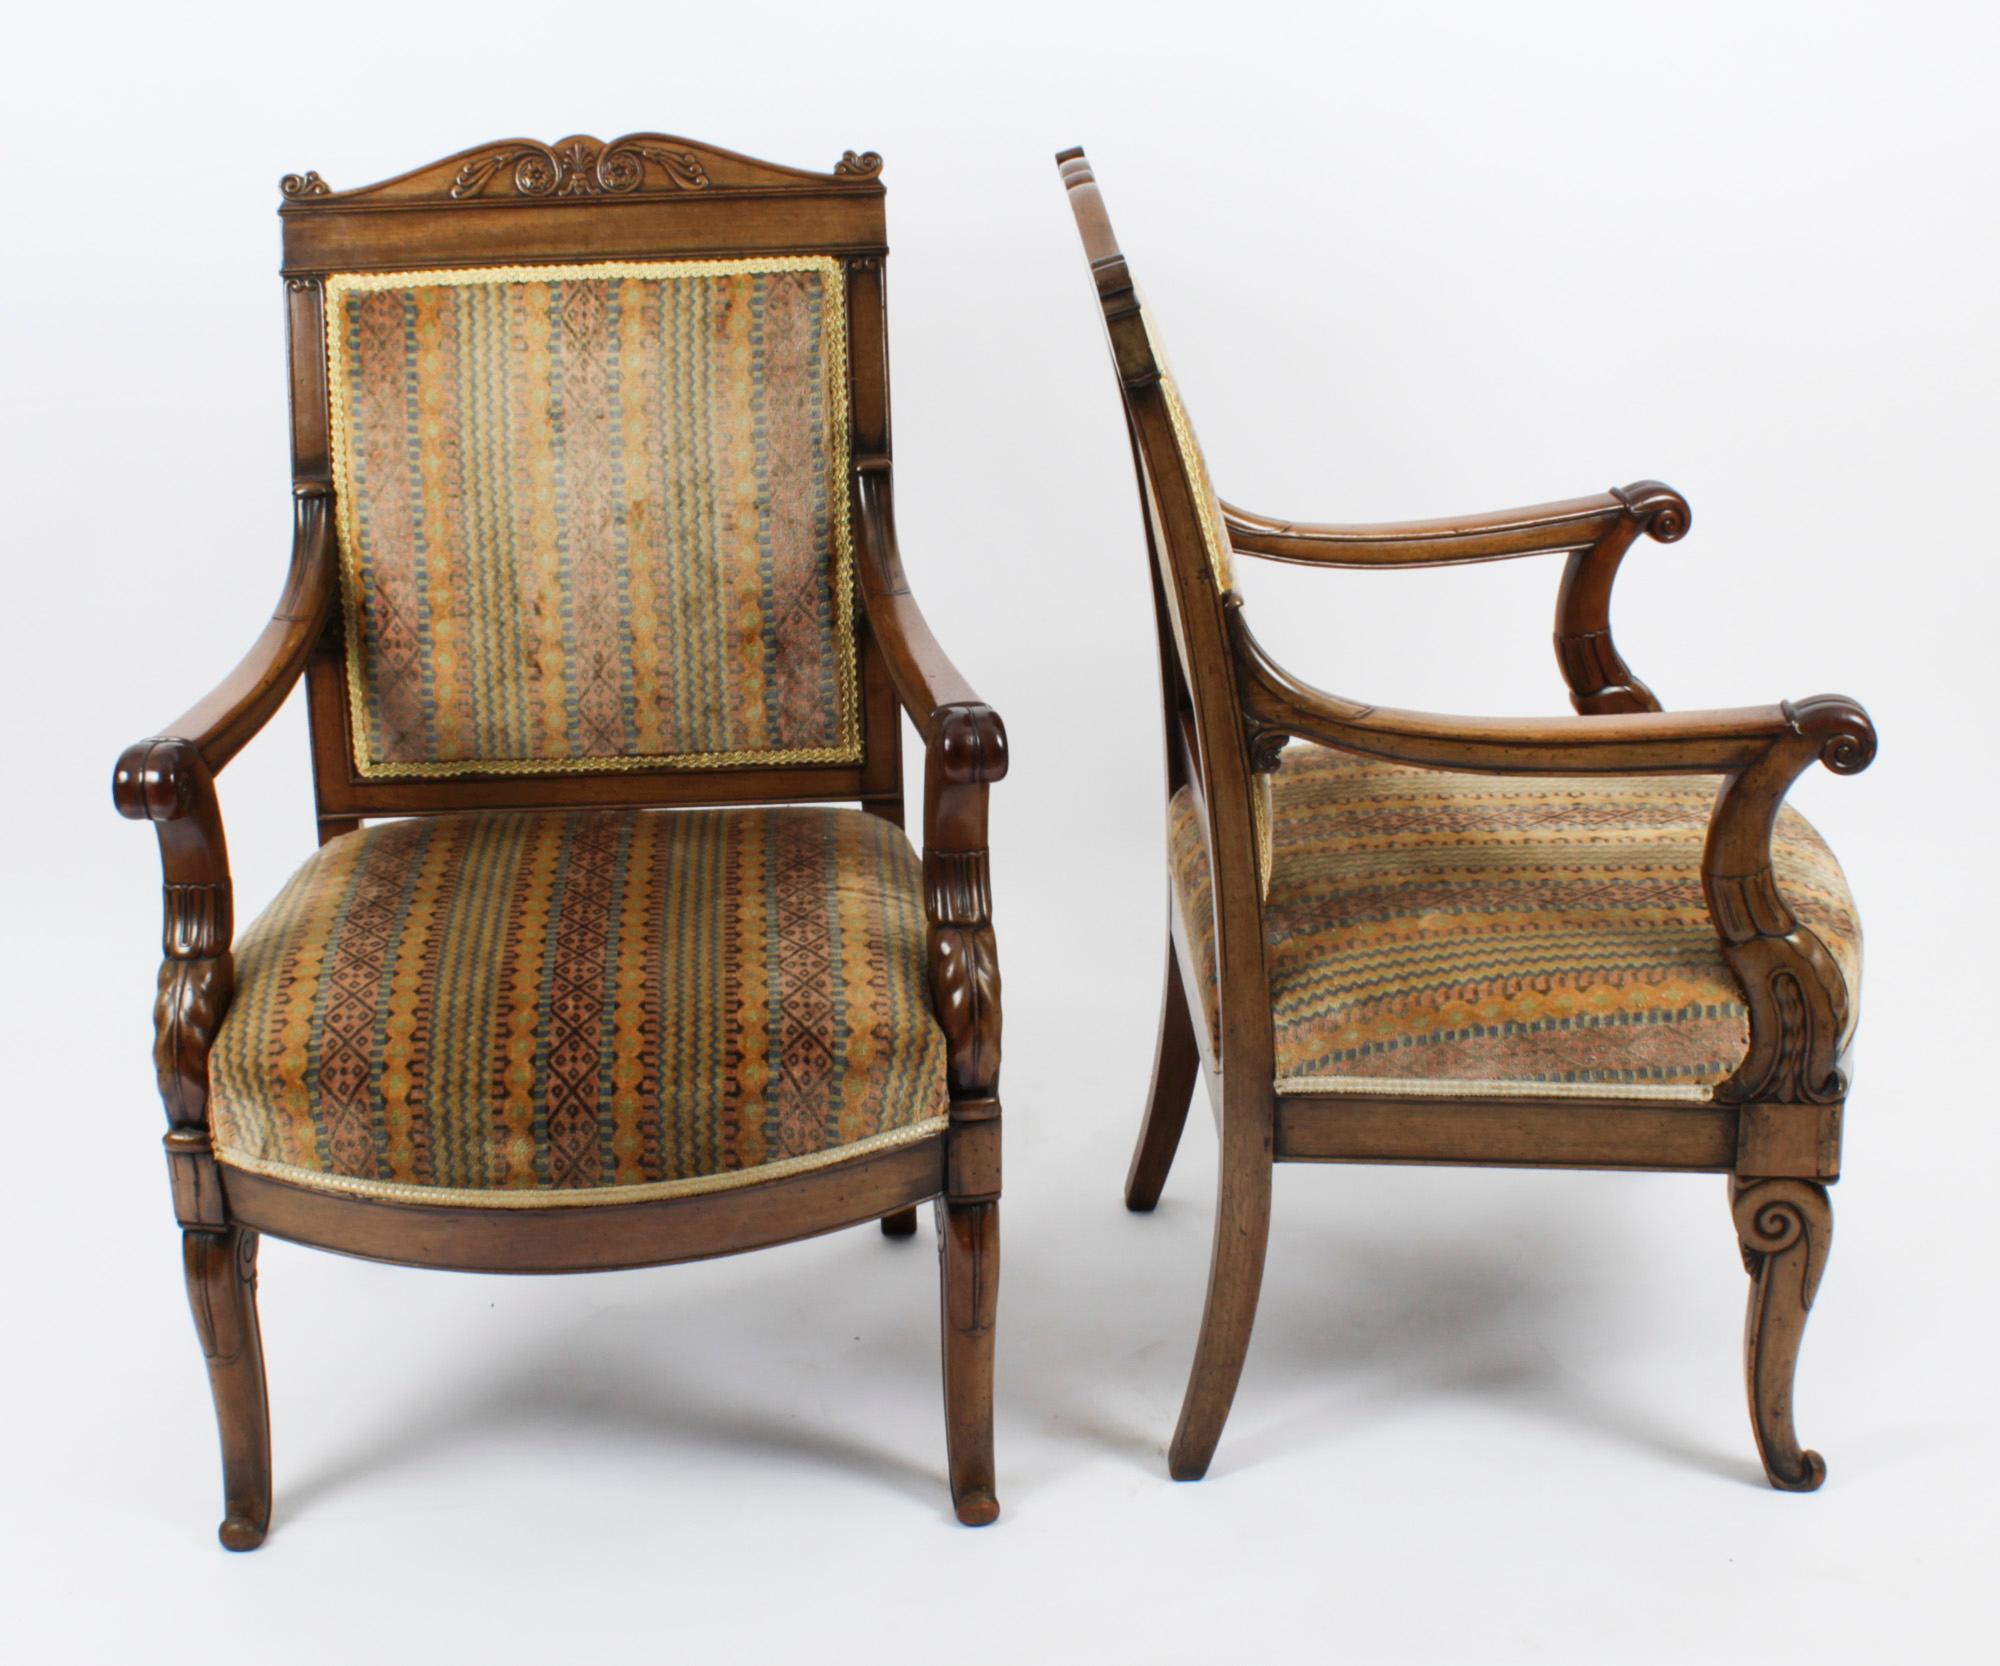 Dies ist eine elegante antike Paar Französisch Empire Revival gepolsterte Rückenlehne Mahagoni Sessel fauteuils, ca. 1880 in Datum.

Das Mahagoniholz hat eine schöne Farbe und eine herrliche Patina. Die geschnitzten oberen Zargen weisen geschwungene